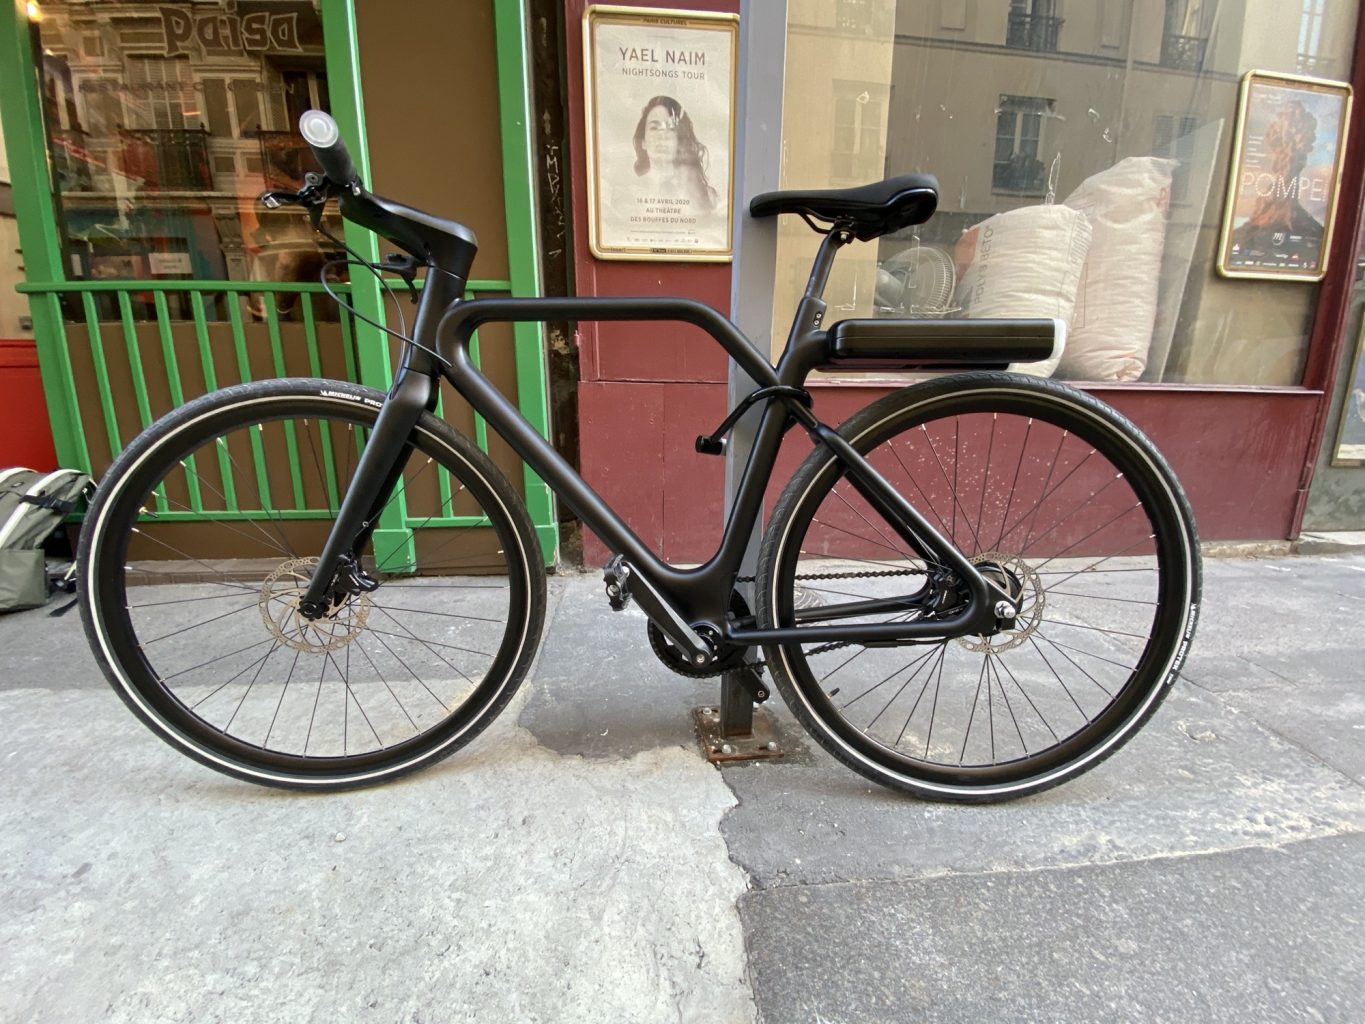 Mon Expérience Vélo - Le Blog: Un 3ème porte-bidon, à quoi bon?